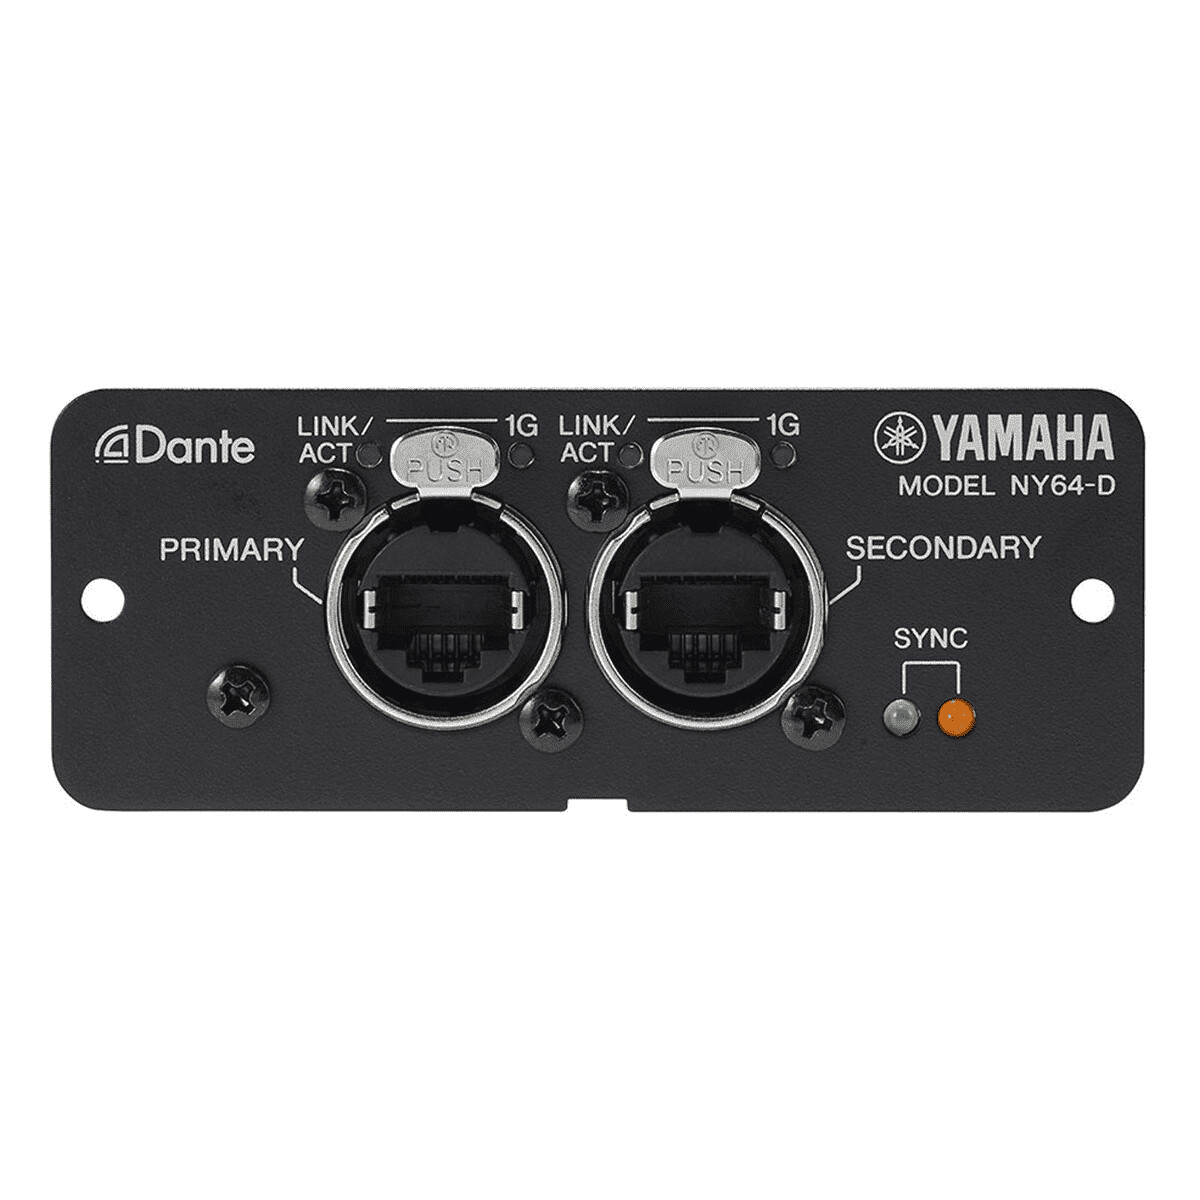 Yamaha-NY64-D-Dante-Audio-Interface